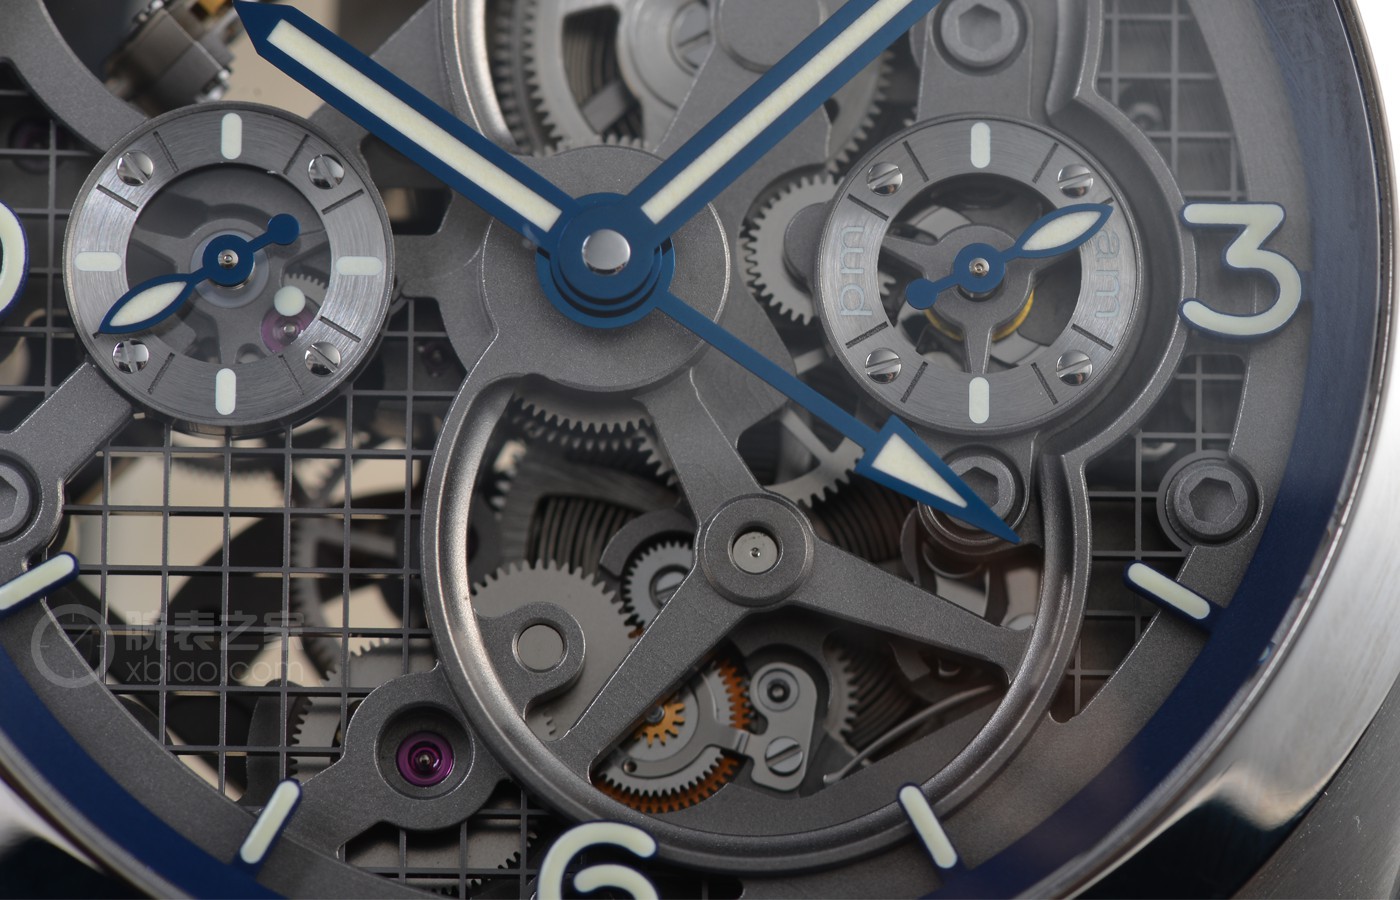 如囊萤|机械设备巨型 品评沛纳海LUMINOR系列产品GMT腕表